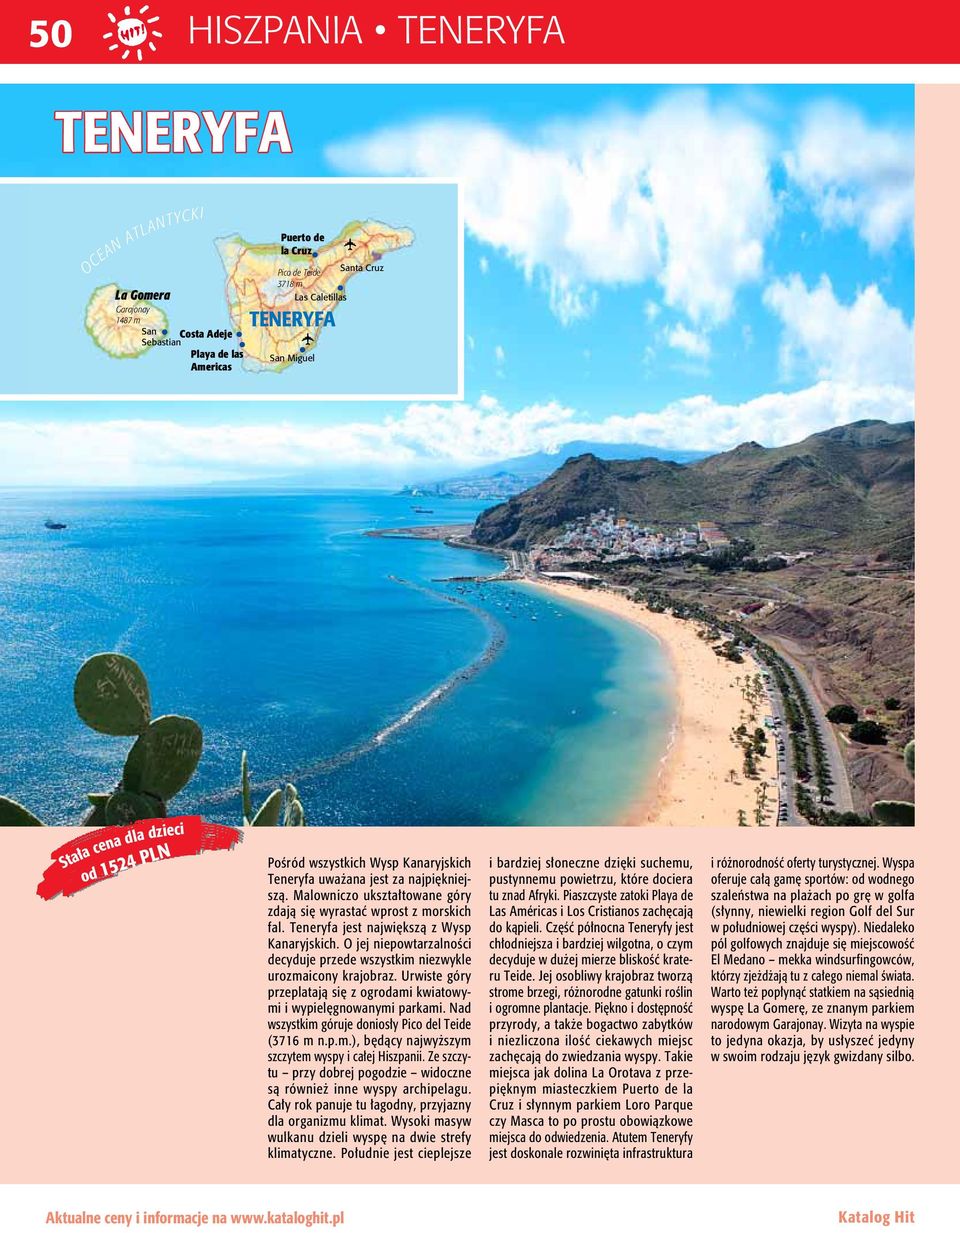 Teneryfa jest największą z Wysp Kanaryjskich. O jej niepowtarzalności decyduje przede wszystkim niezwykle urozmaicony krajobraz.